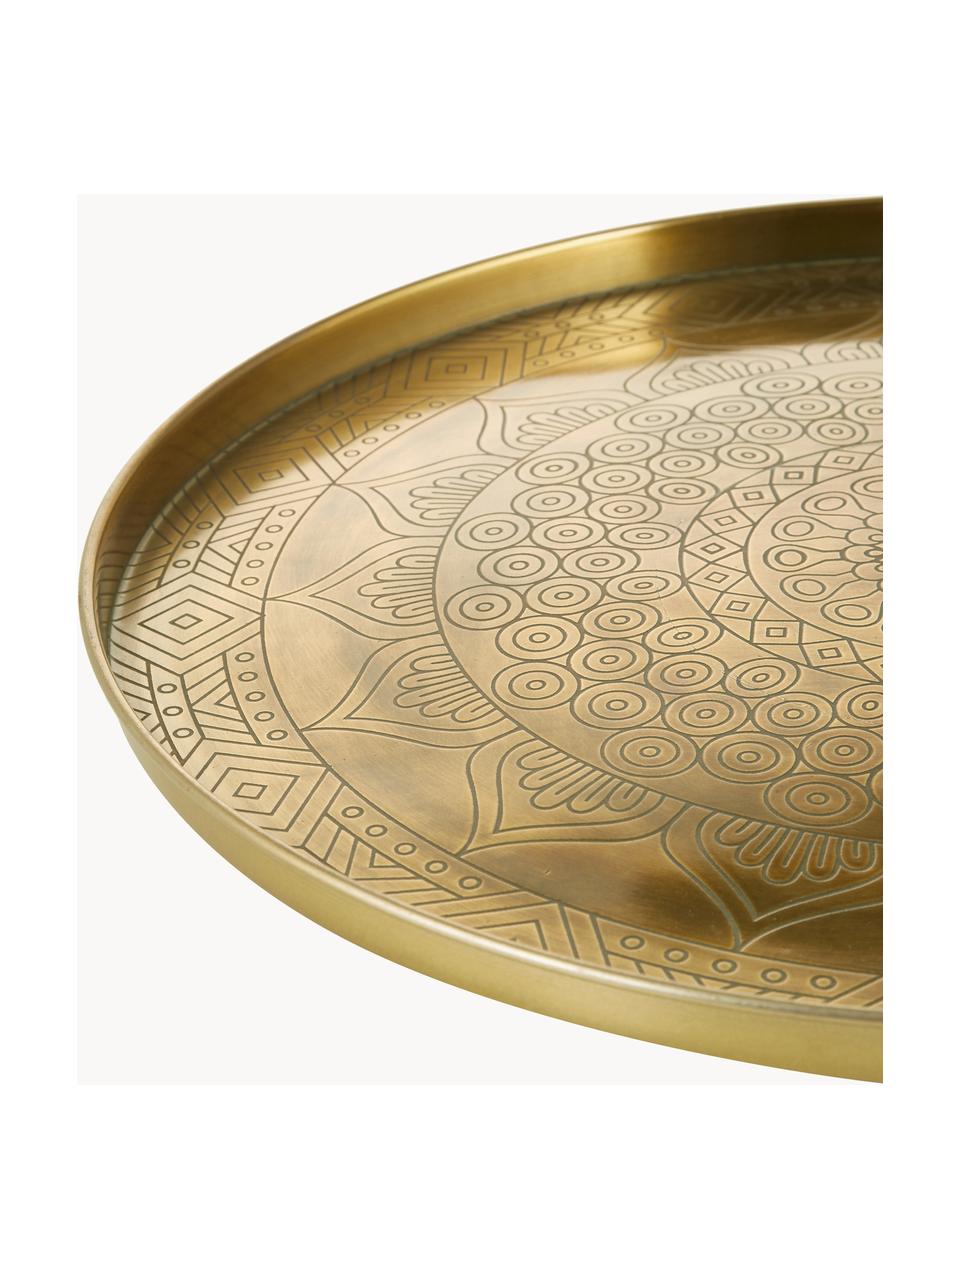 Großes Deko-Tablett Conan aus Metall, Metall, beschichtet, Goldfarben, Ø 40 cm